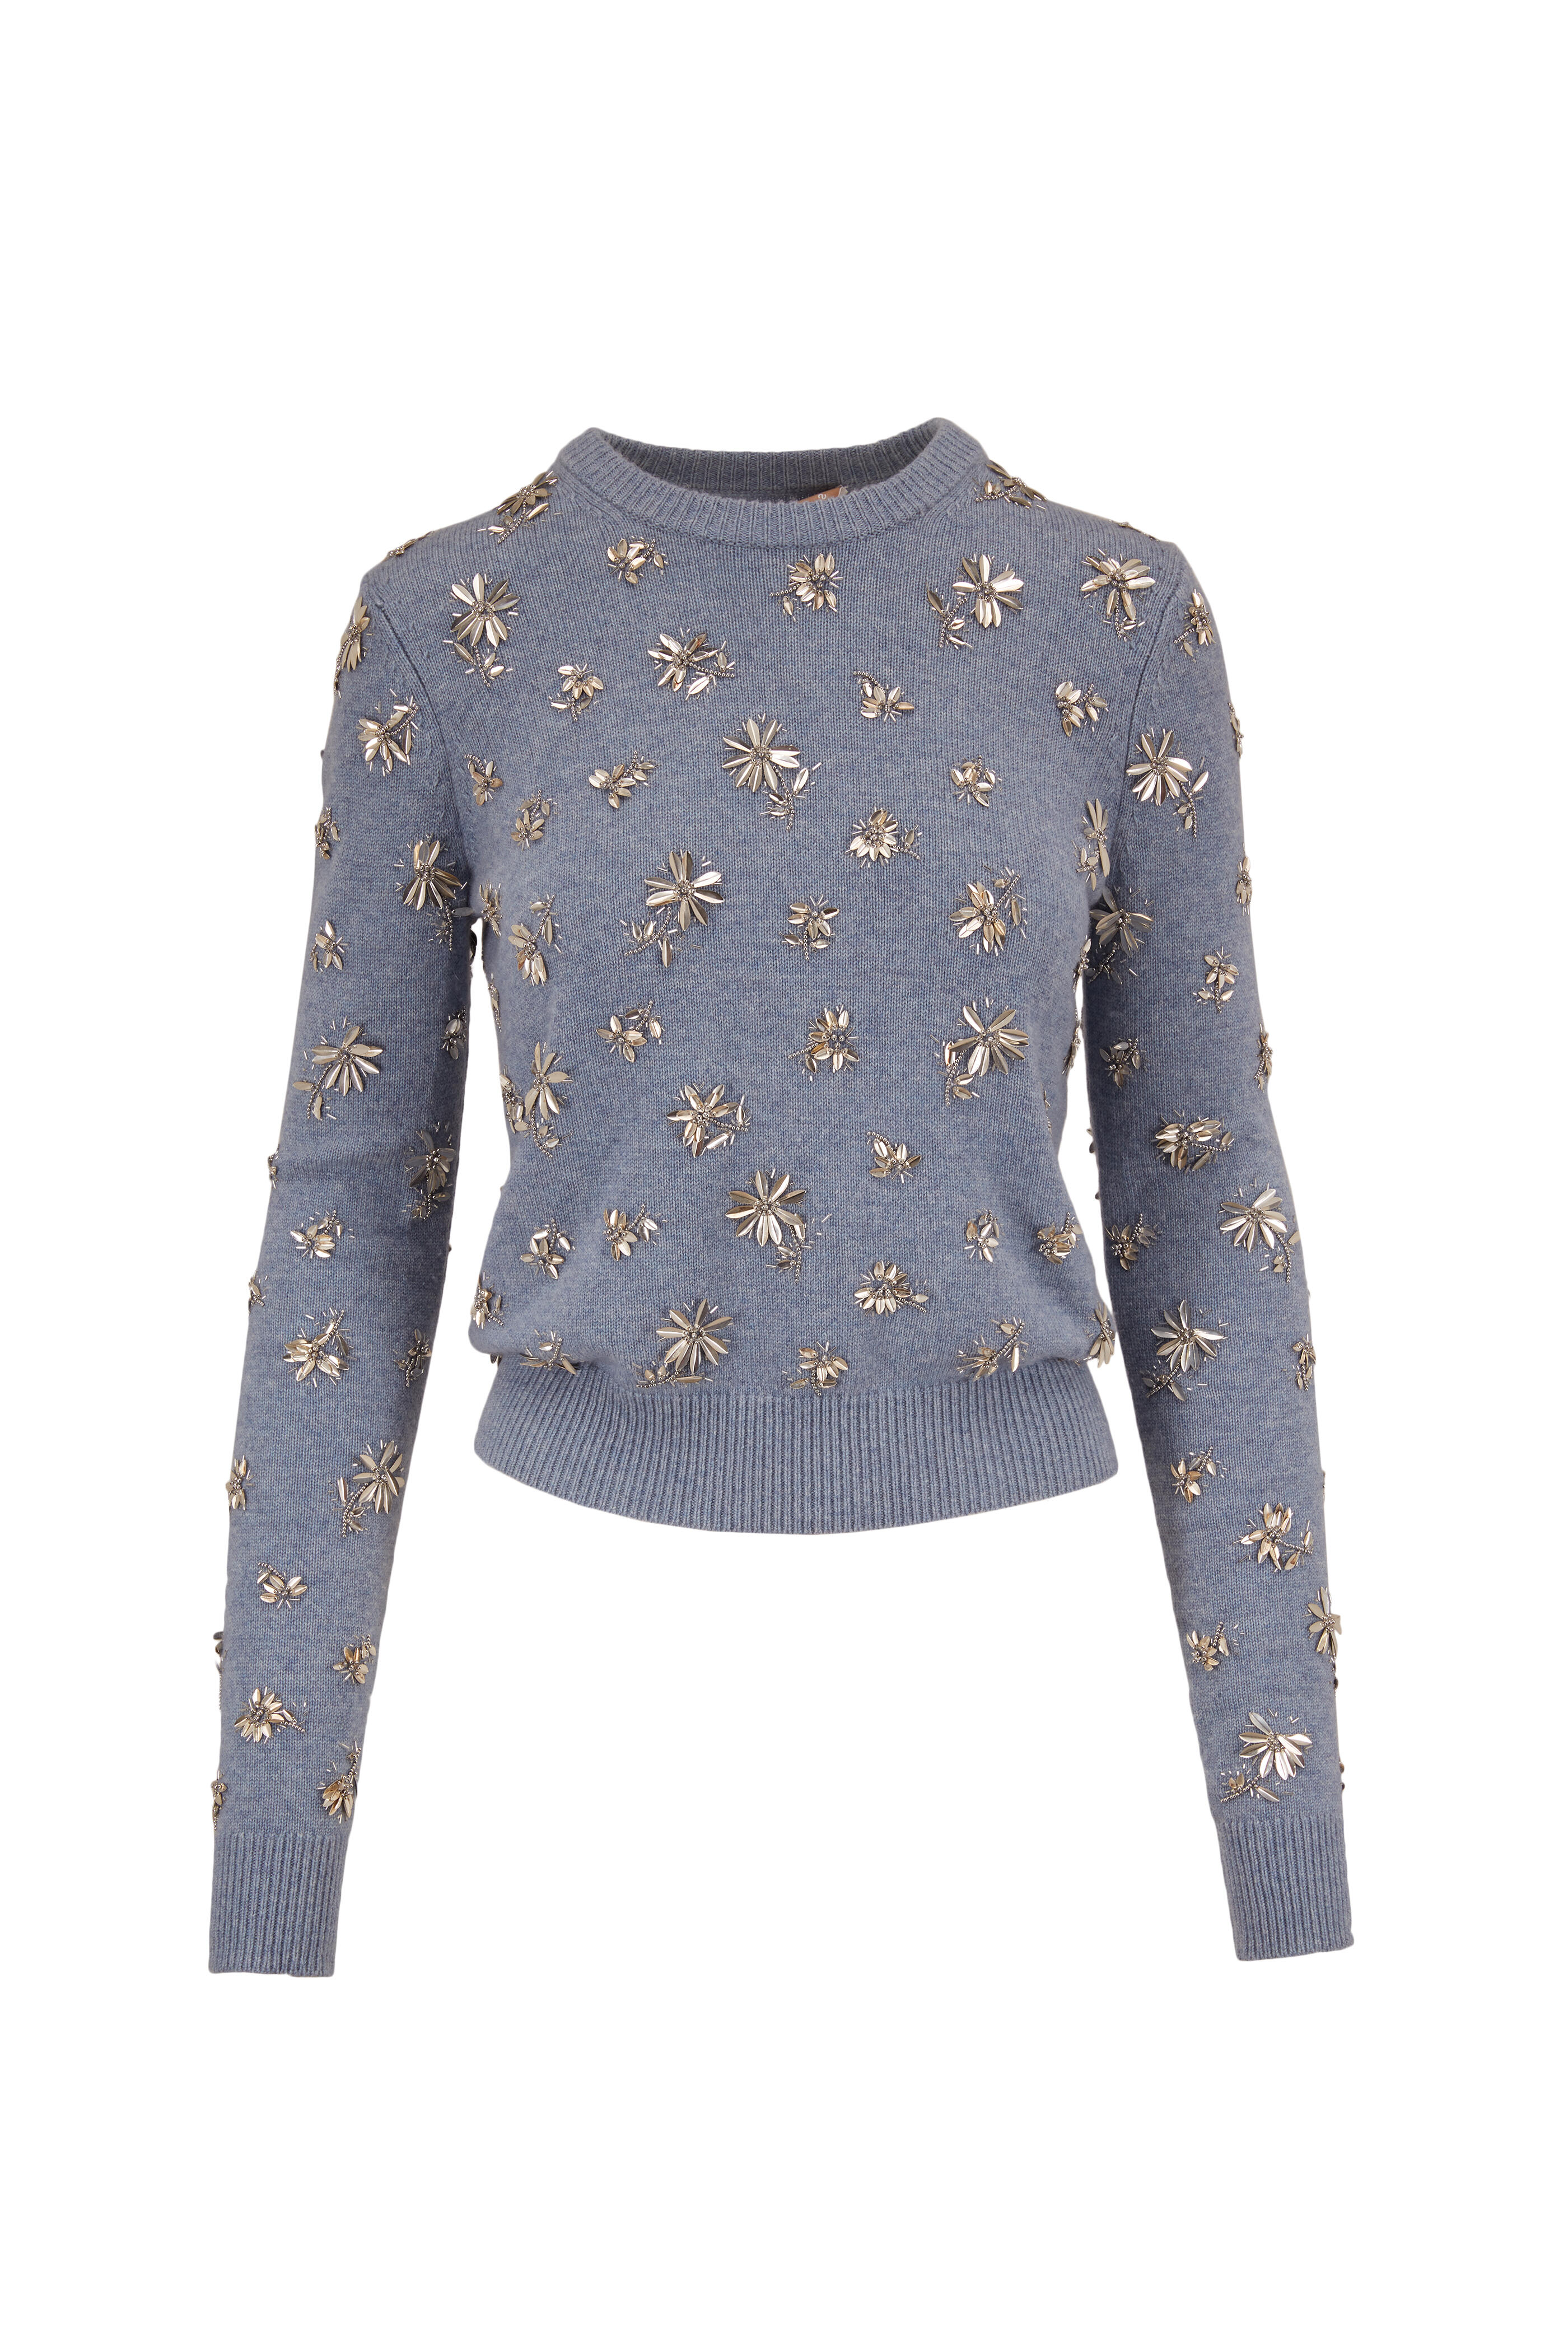 Michael Kors Collection - Stream Melange Cashmere Floral Embellished Sweater